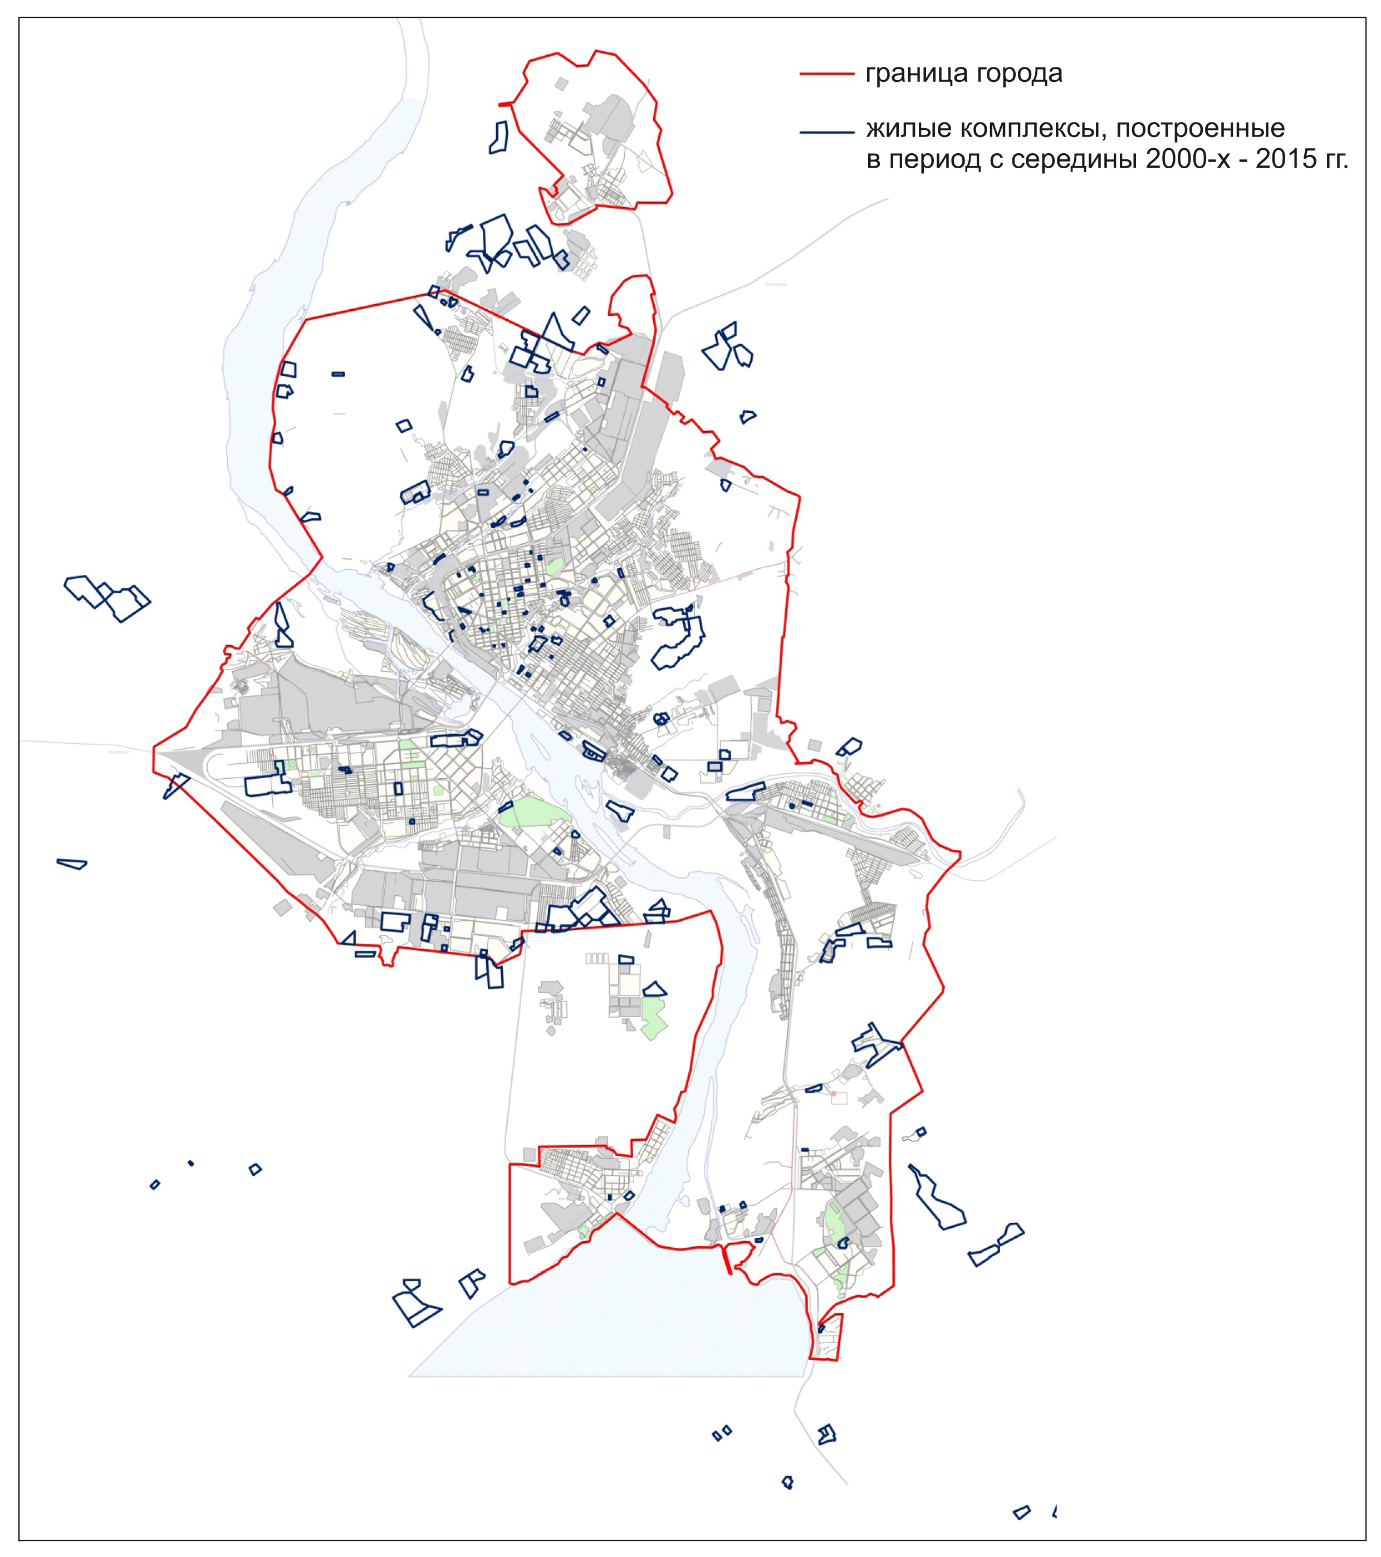 Рис 3. Схема размещения жилых комплексов в структуре города в период с середины 2000-х – середины 2010-х гг. Автор - Д.Н. Шалыгина.